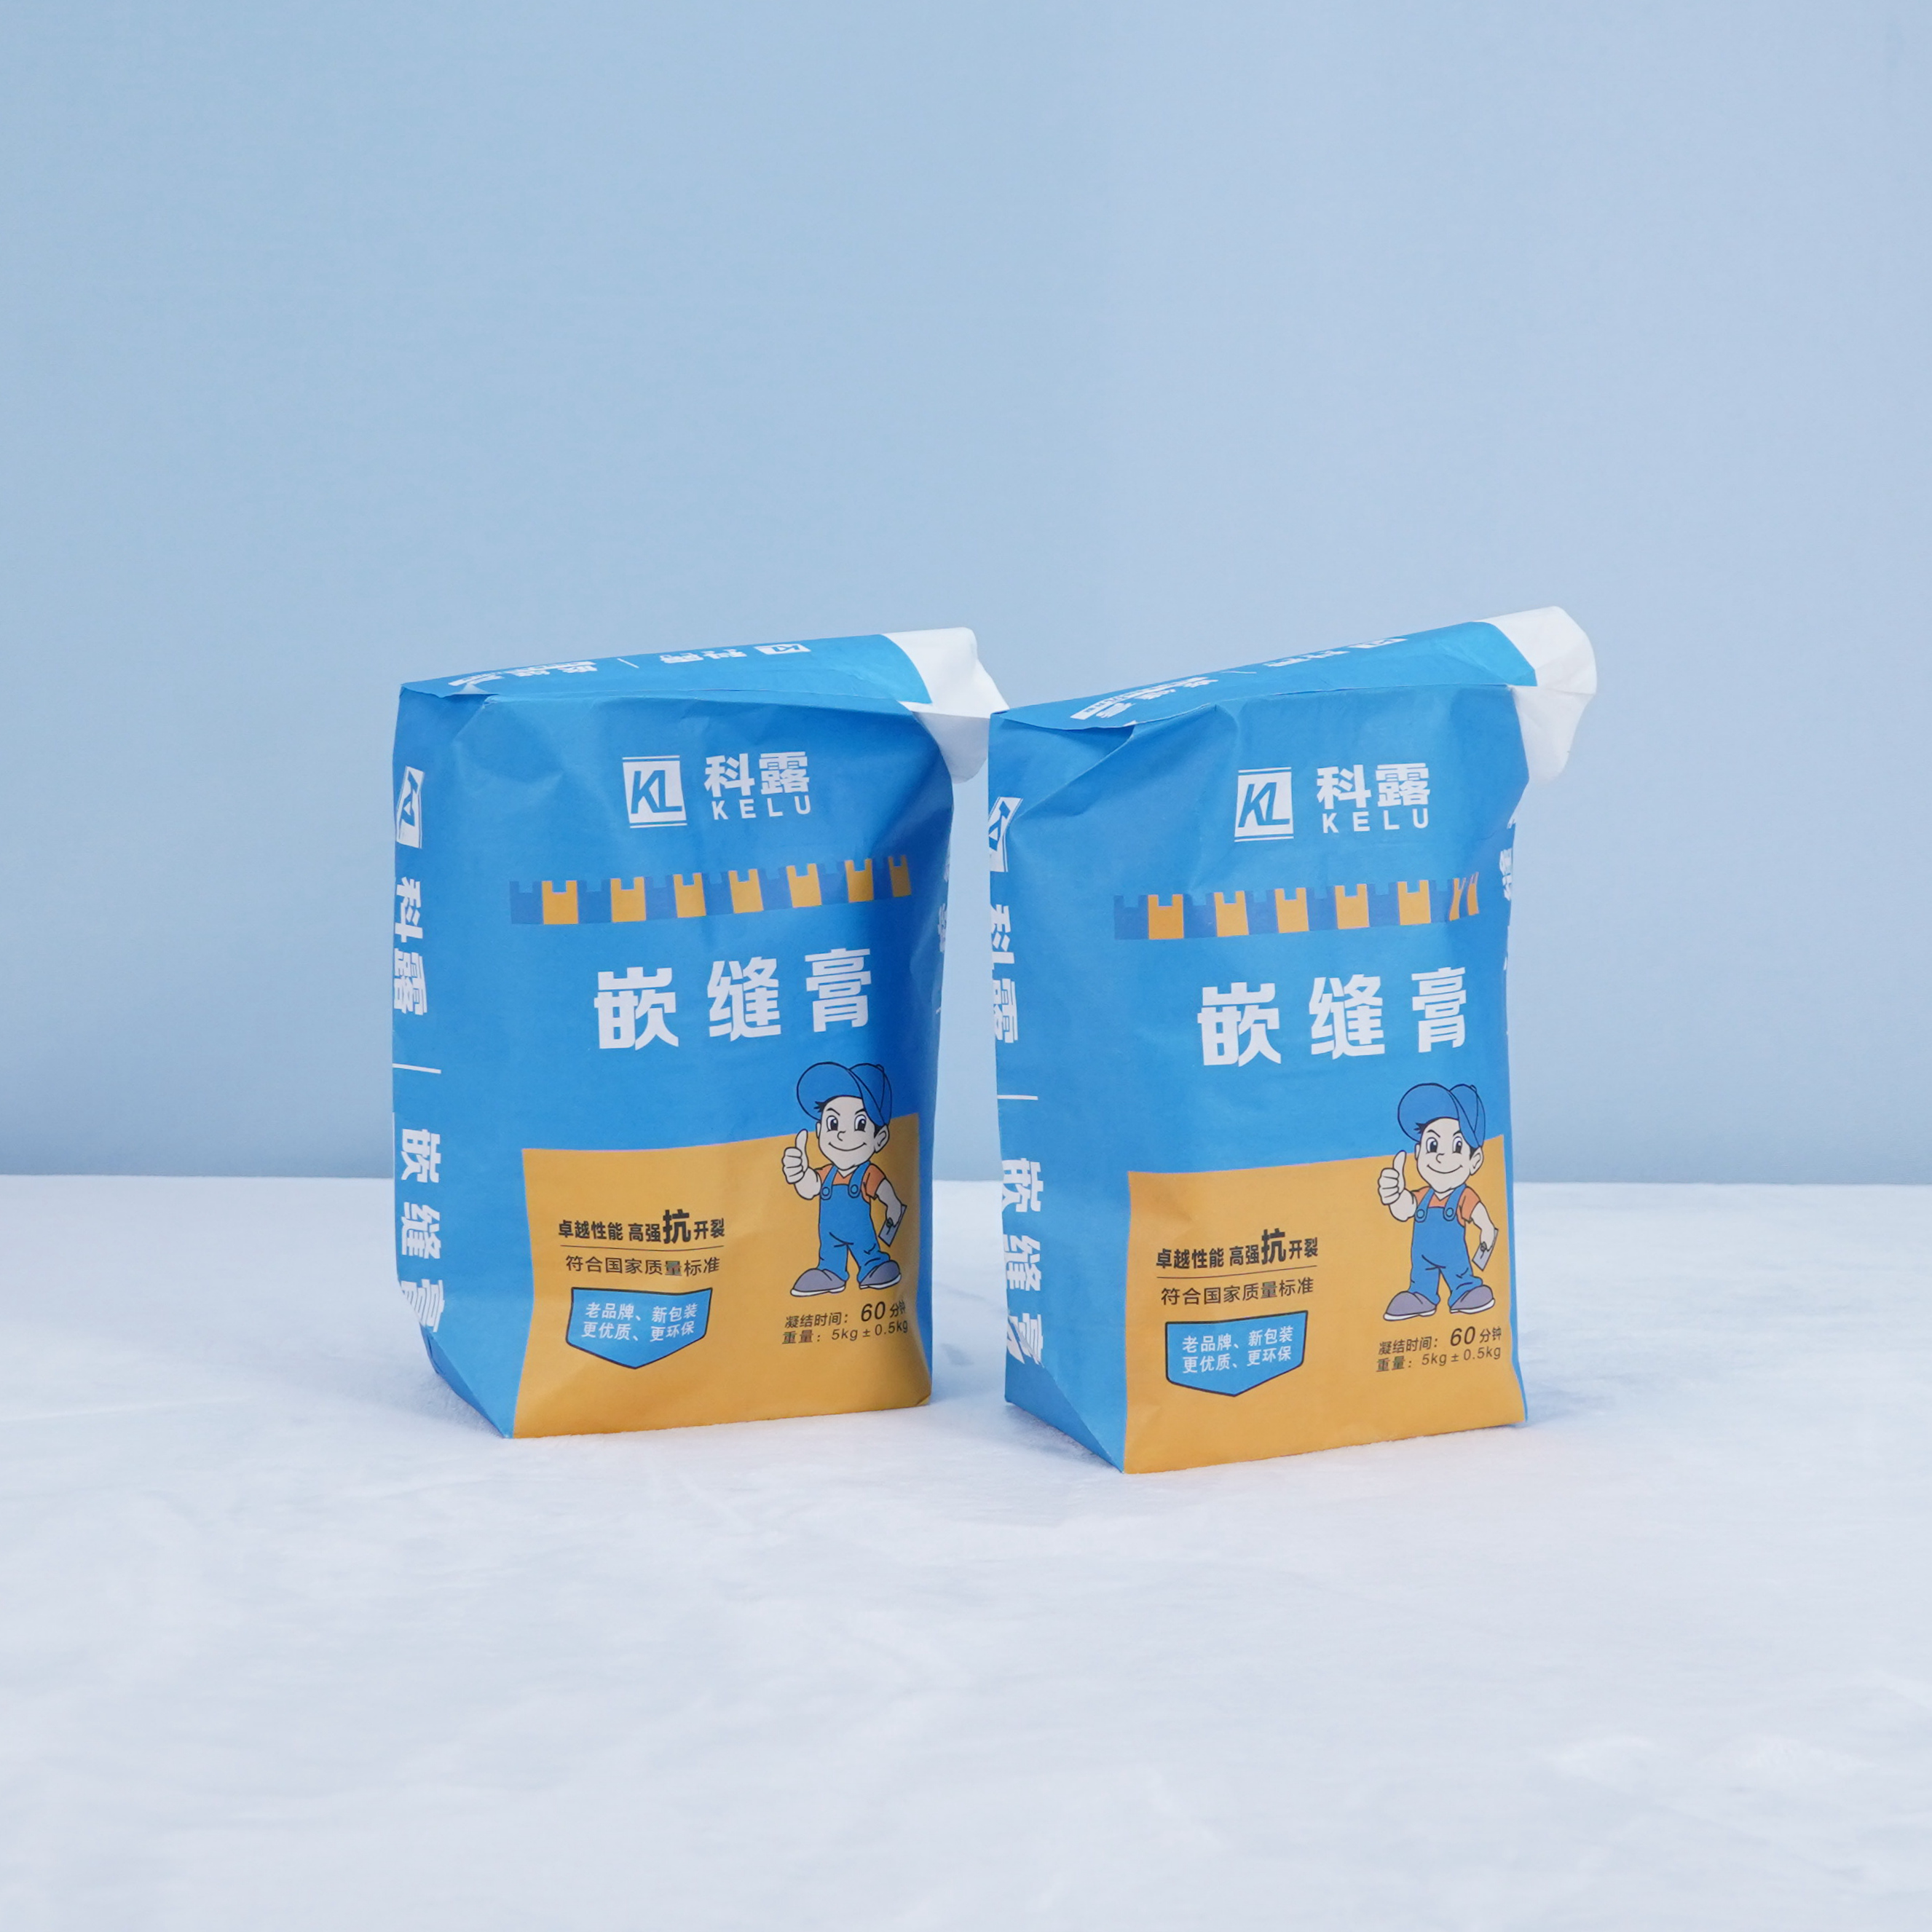 מותאם אישית 5KGS סין קראפט שקיות שסתום נייר 3 כימיקלים נייר קראפט רובד חומרי בנייה שקית שסתום מלט